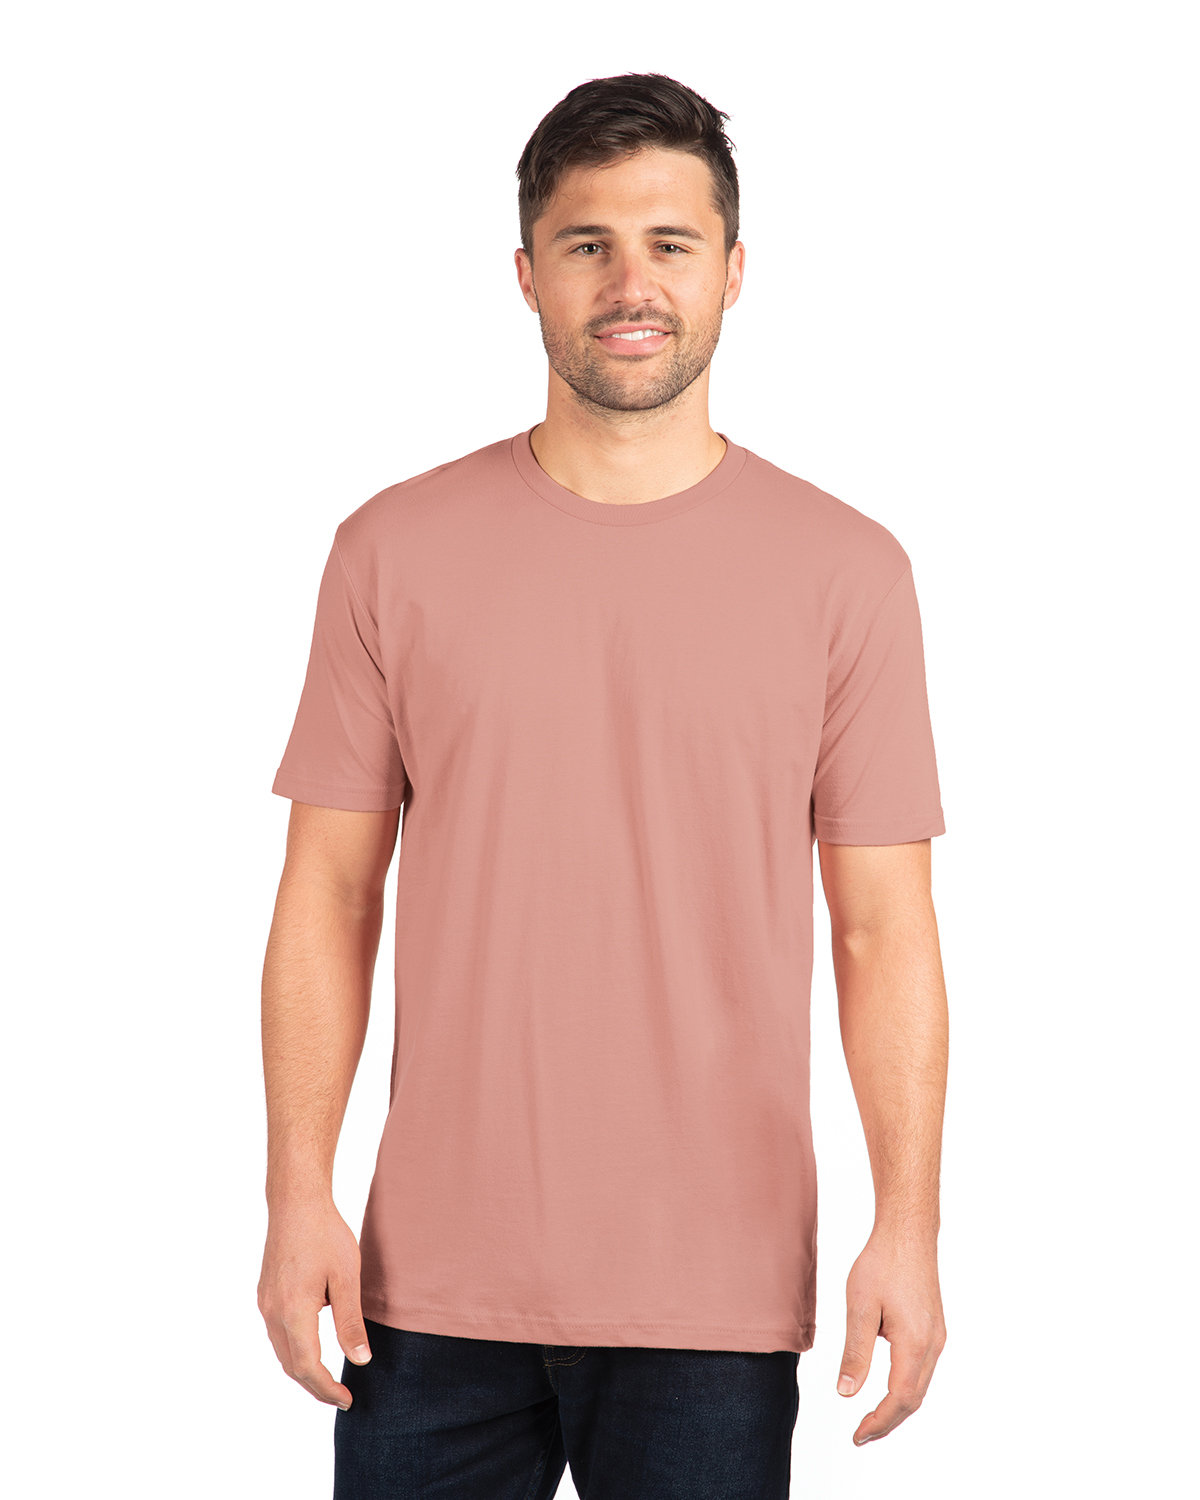 Next Level Apparel Unisex Cotton T-Shirt DESERT PINK 